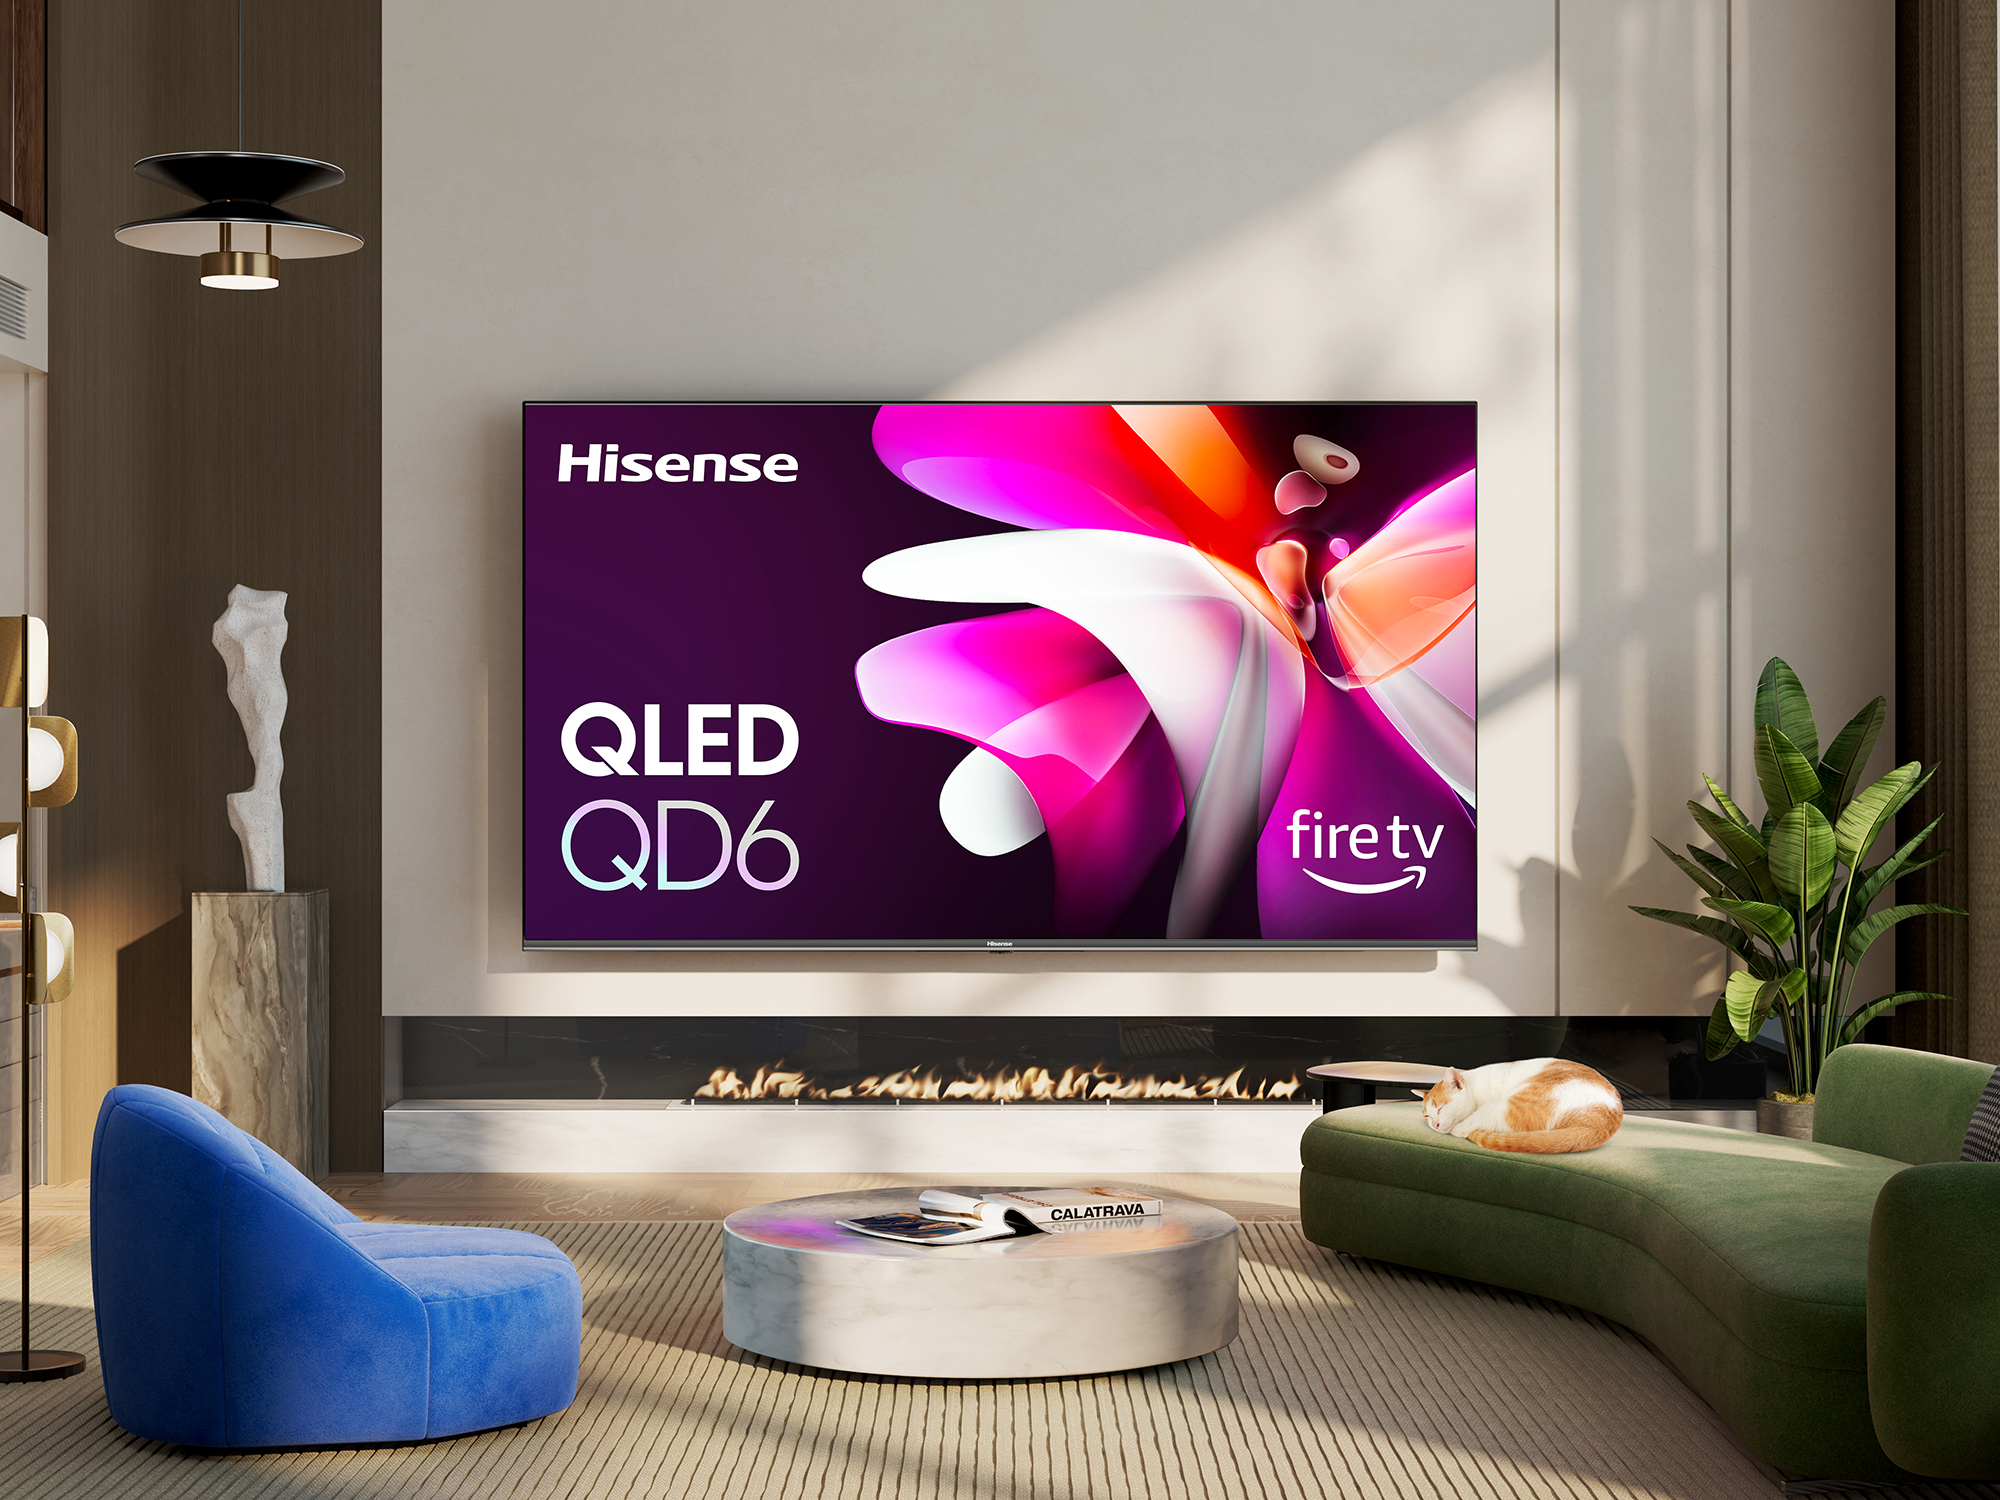 Hisense QD6 टेलीविजन की एक प्रोमो जीवनशैली छवि।